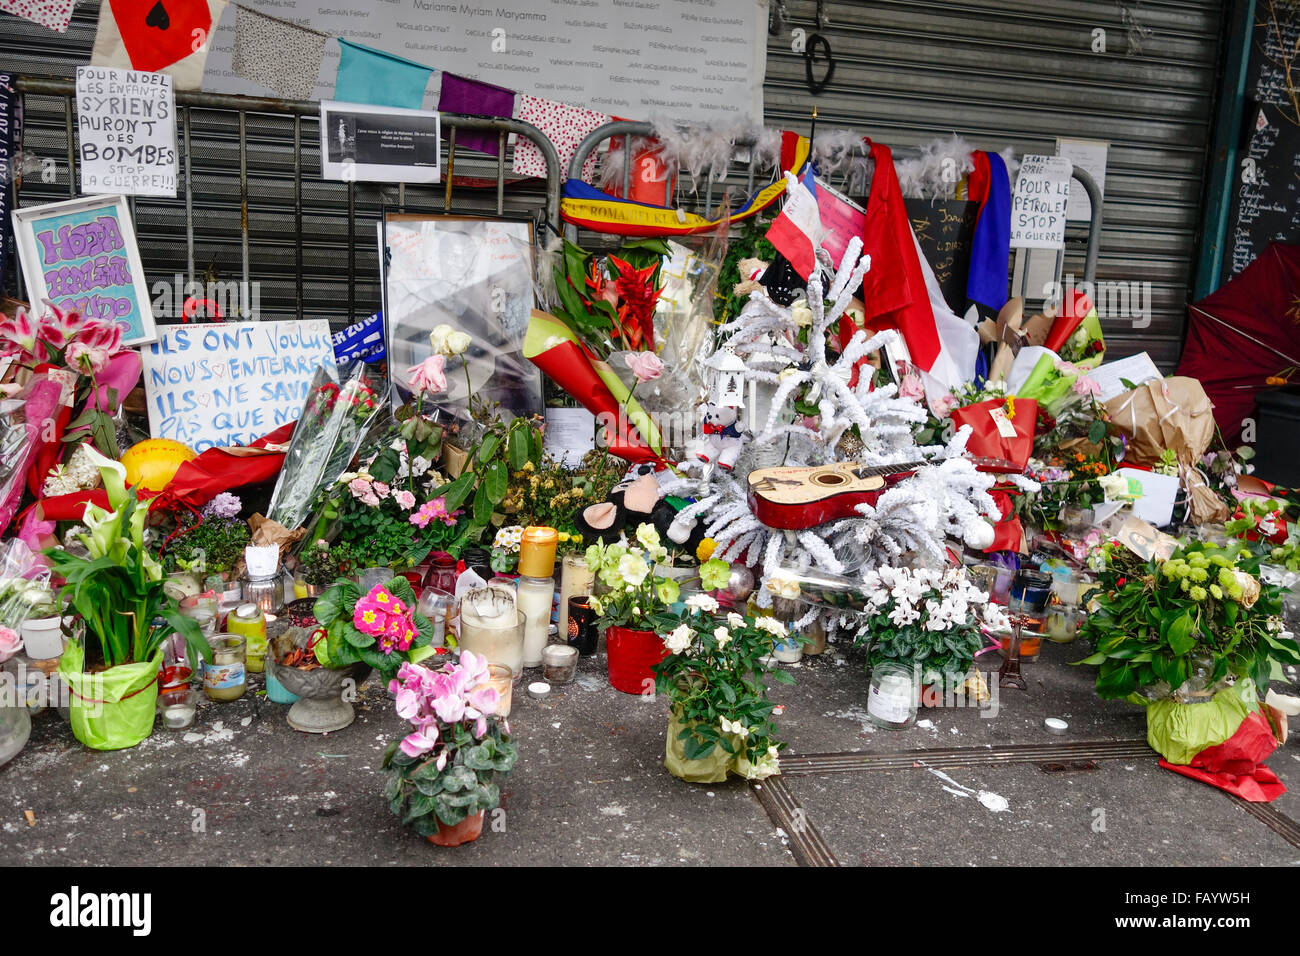 Hommages aux victimes des attaques terroristes du 13 novembre 2015, à La Belle Equipe restaurant, Paris, France. Banque D'Images